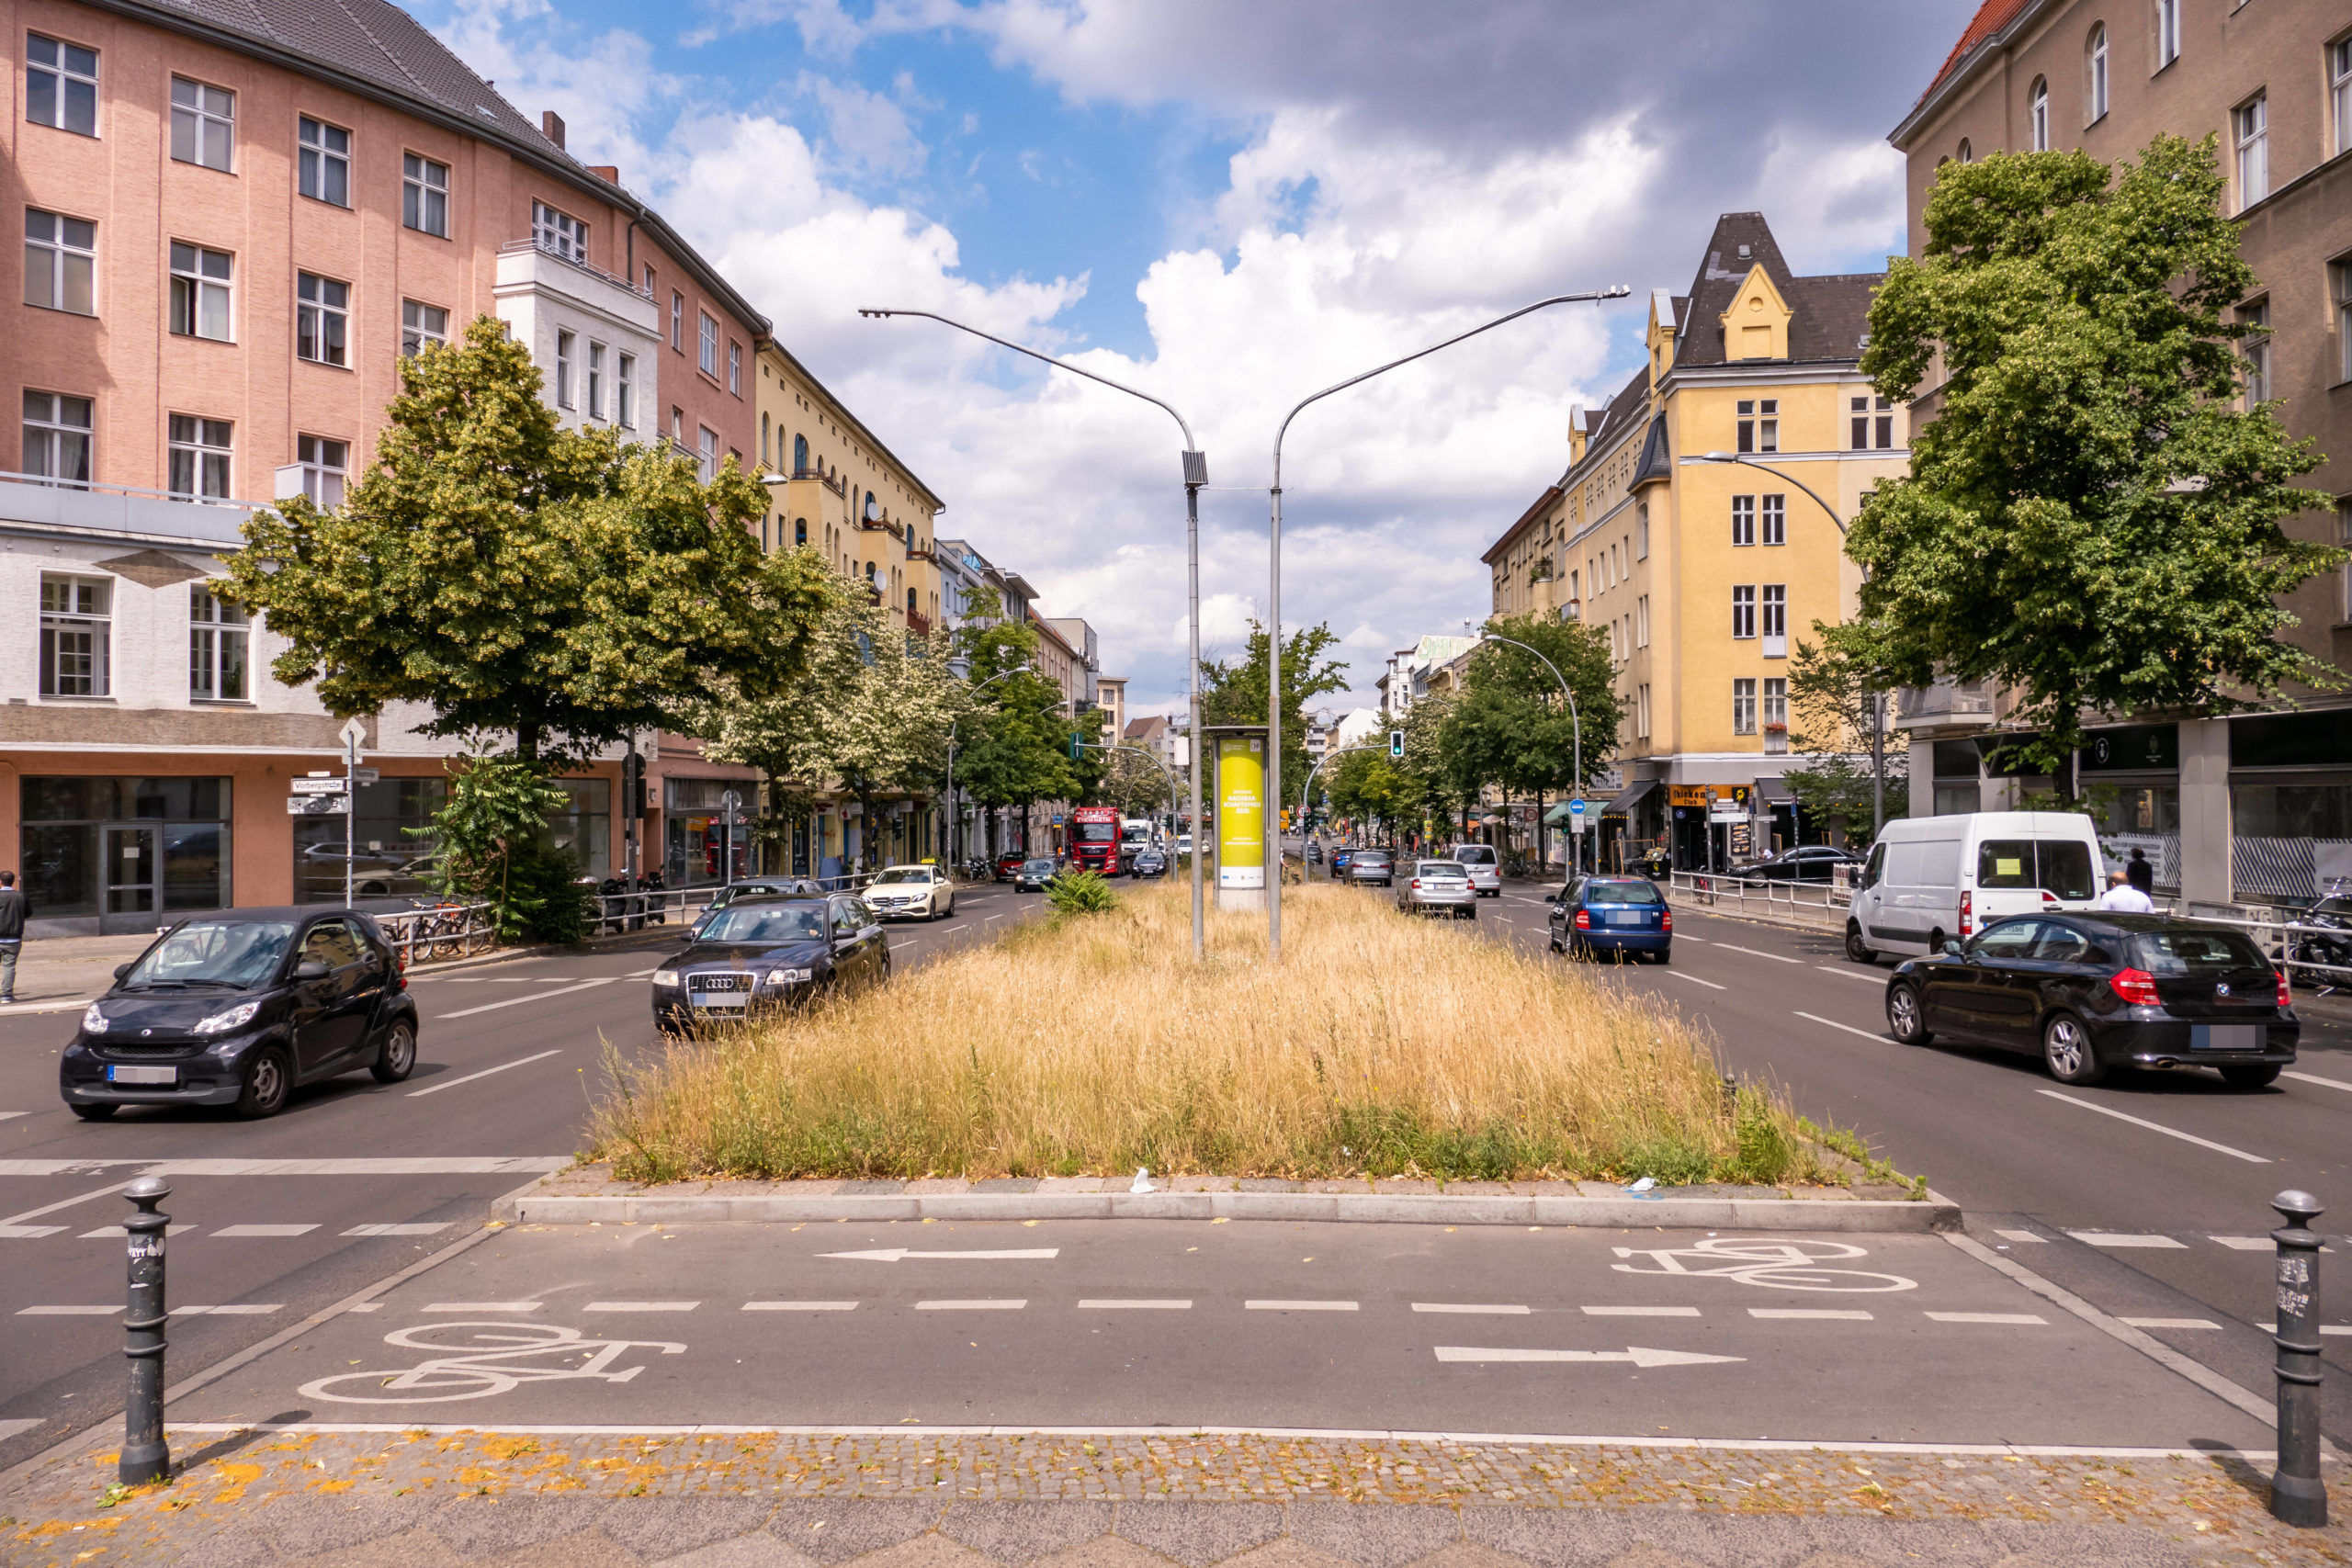 Tempo 30 auf Straßen wie der Hauptstraße in Schöneberg hat nur Vorteile 